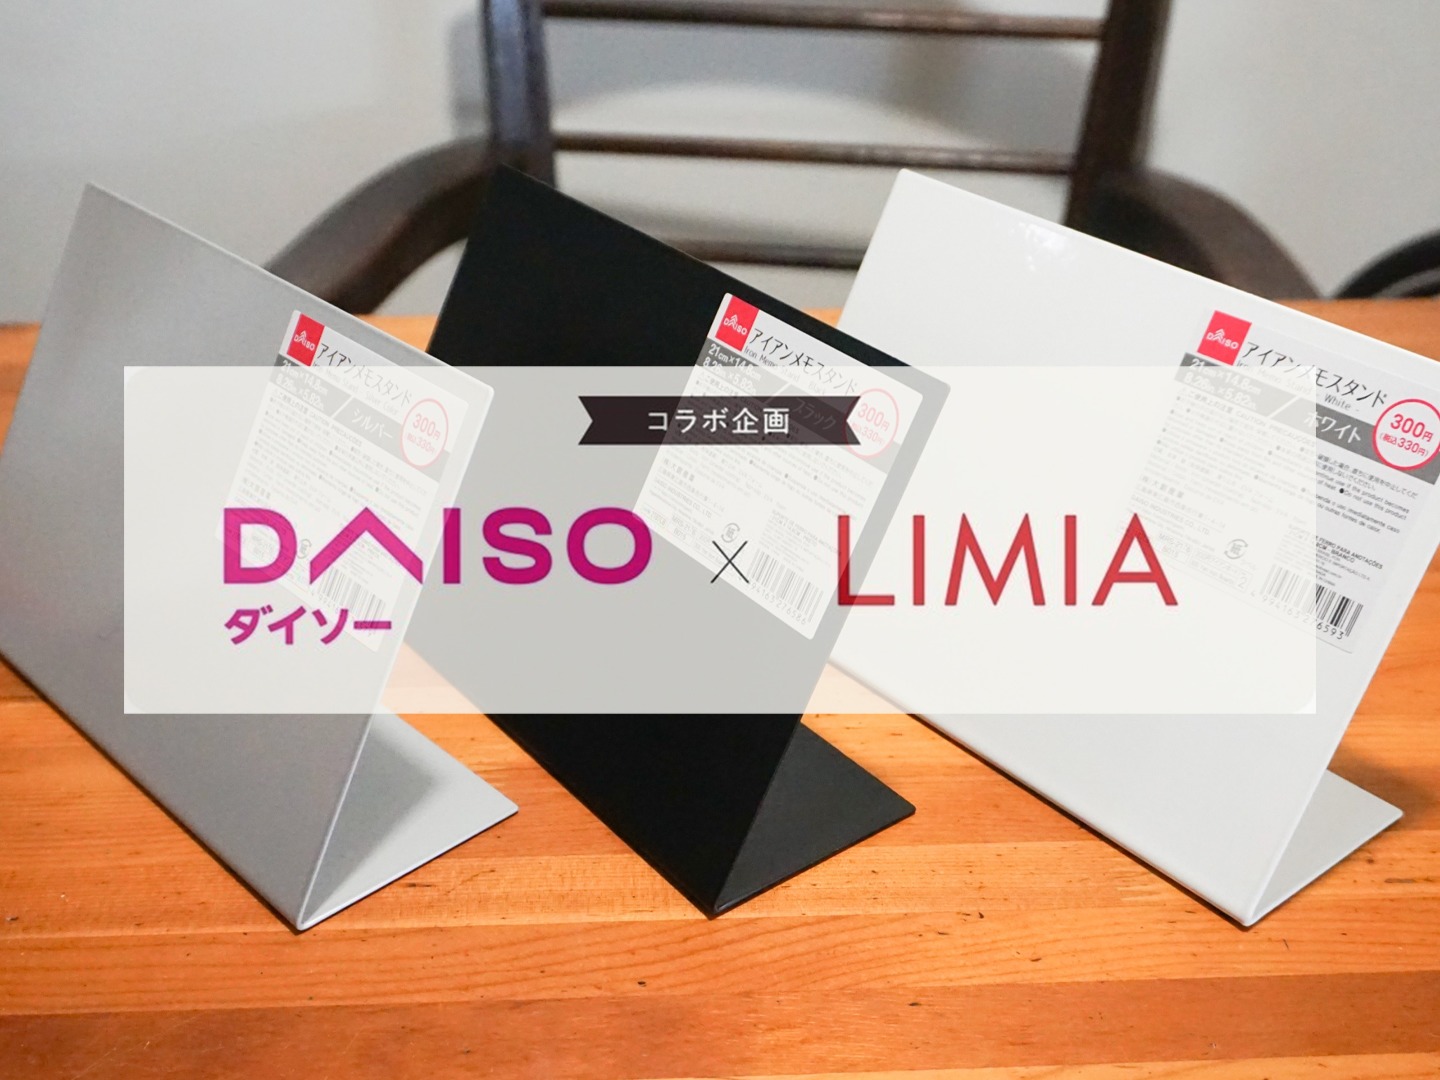 ダイソー Limia アイアンメモスタンドは磁石が付く デスク整理や手作りパネル Limia リミア